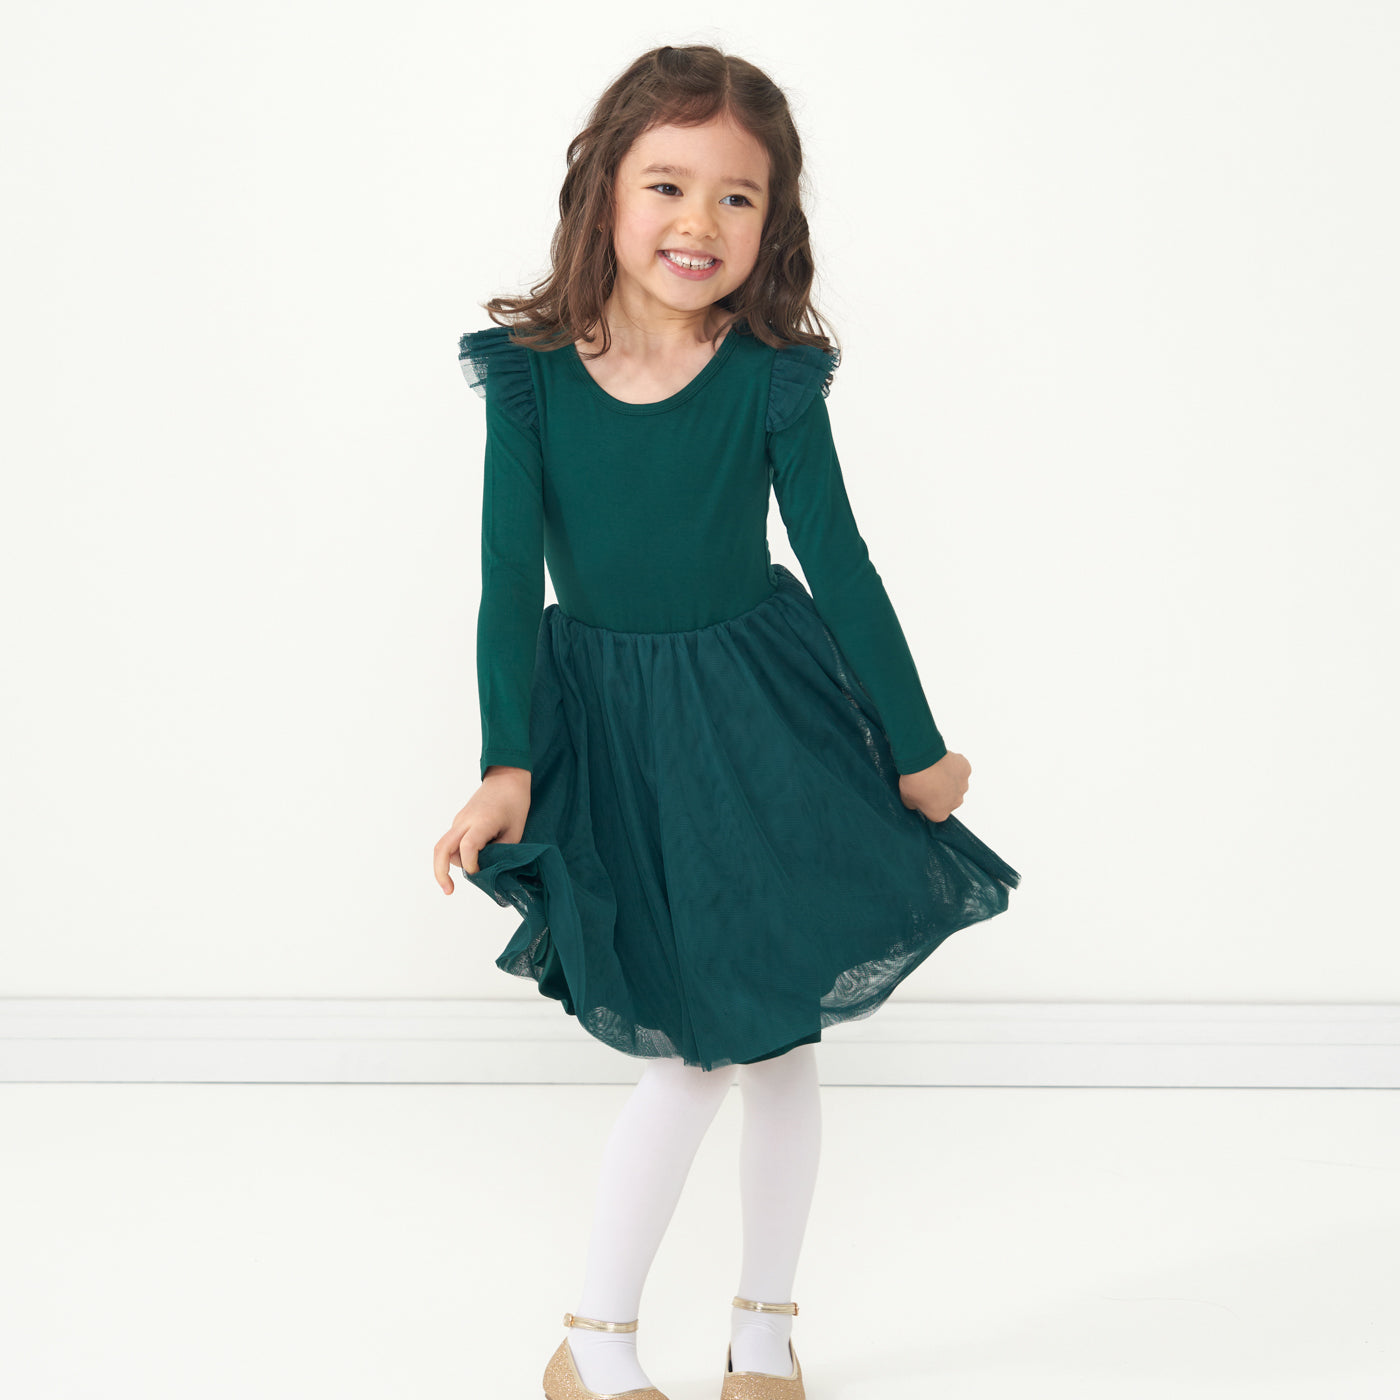 Child posing wearing an Emerald flutter tutu dress 